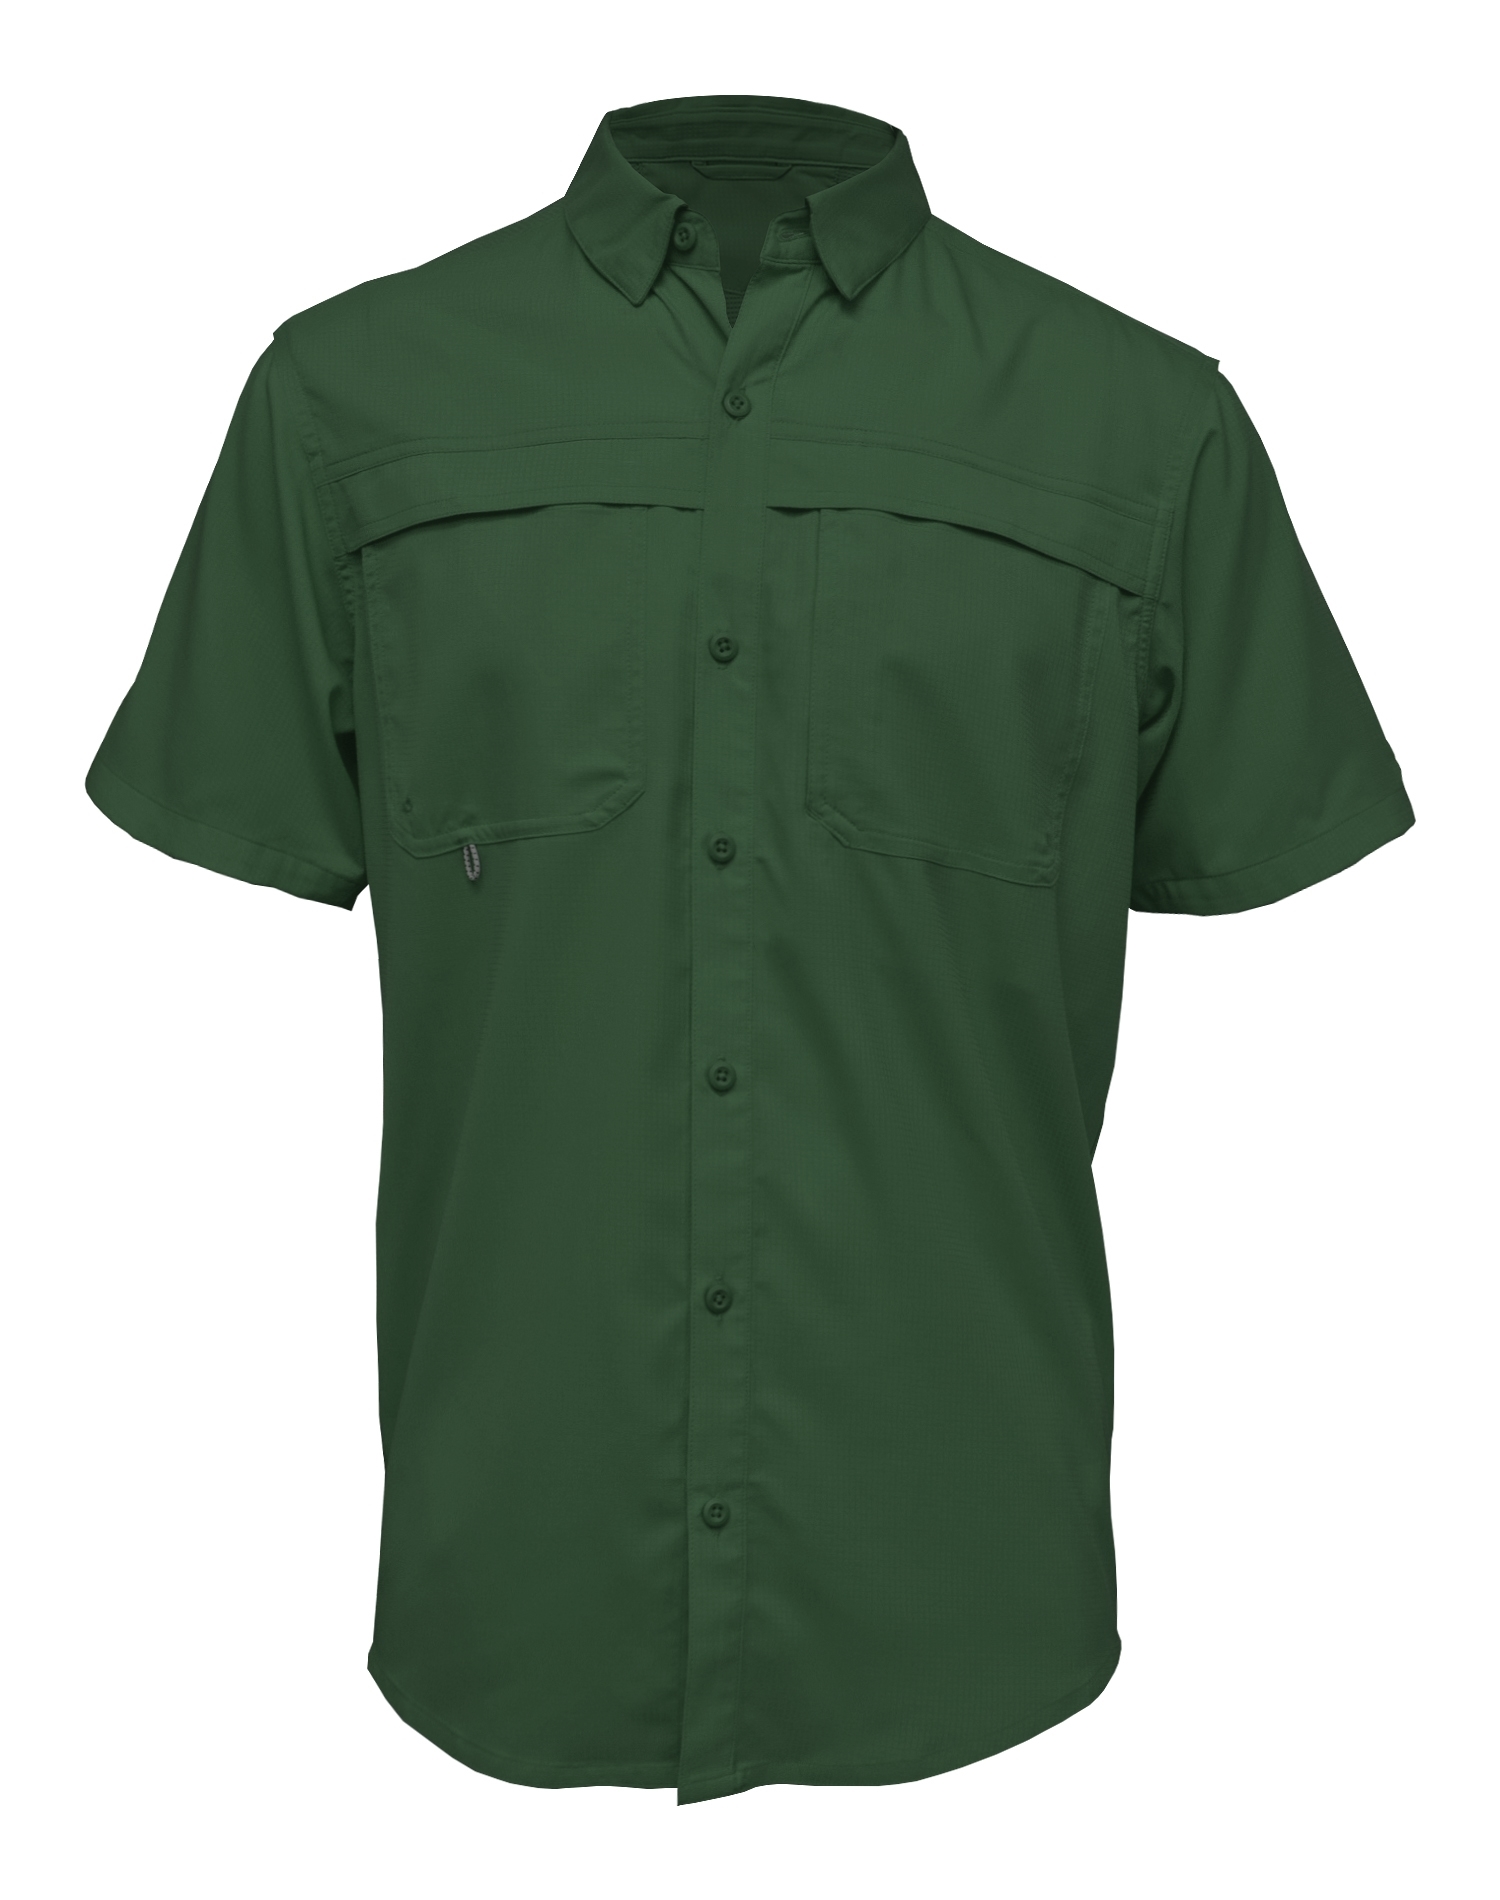 3100 Men's Short Sleeve Fishing Shirt Stitch-N-Print